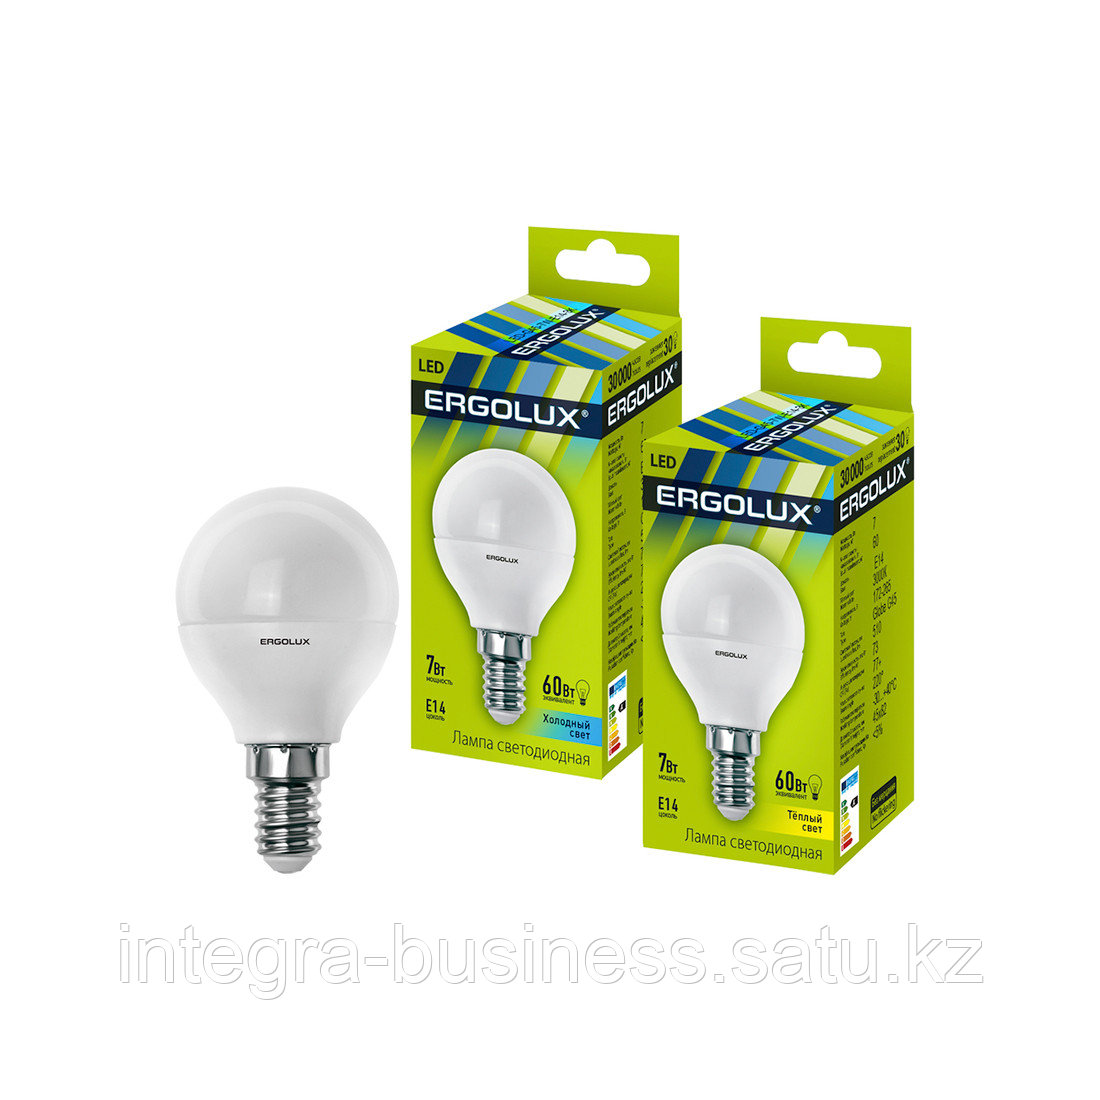 Эл. лампа светодиодная Ergolux LED-G45-7W-E14-3K, Тёплый